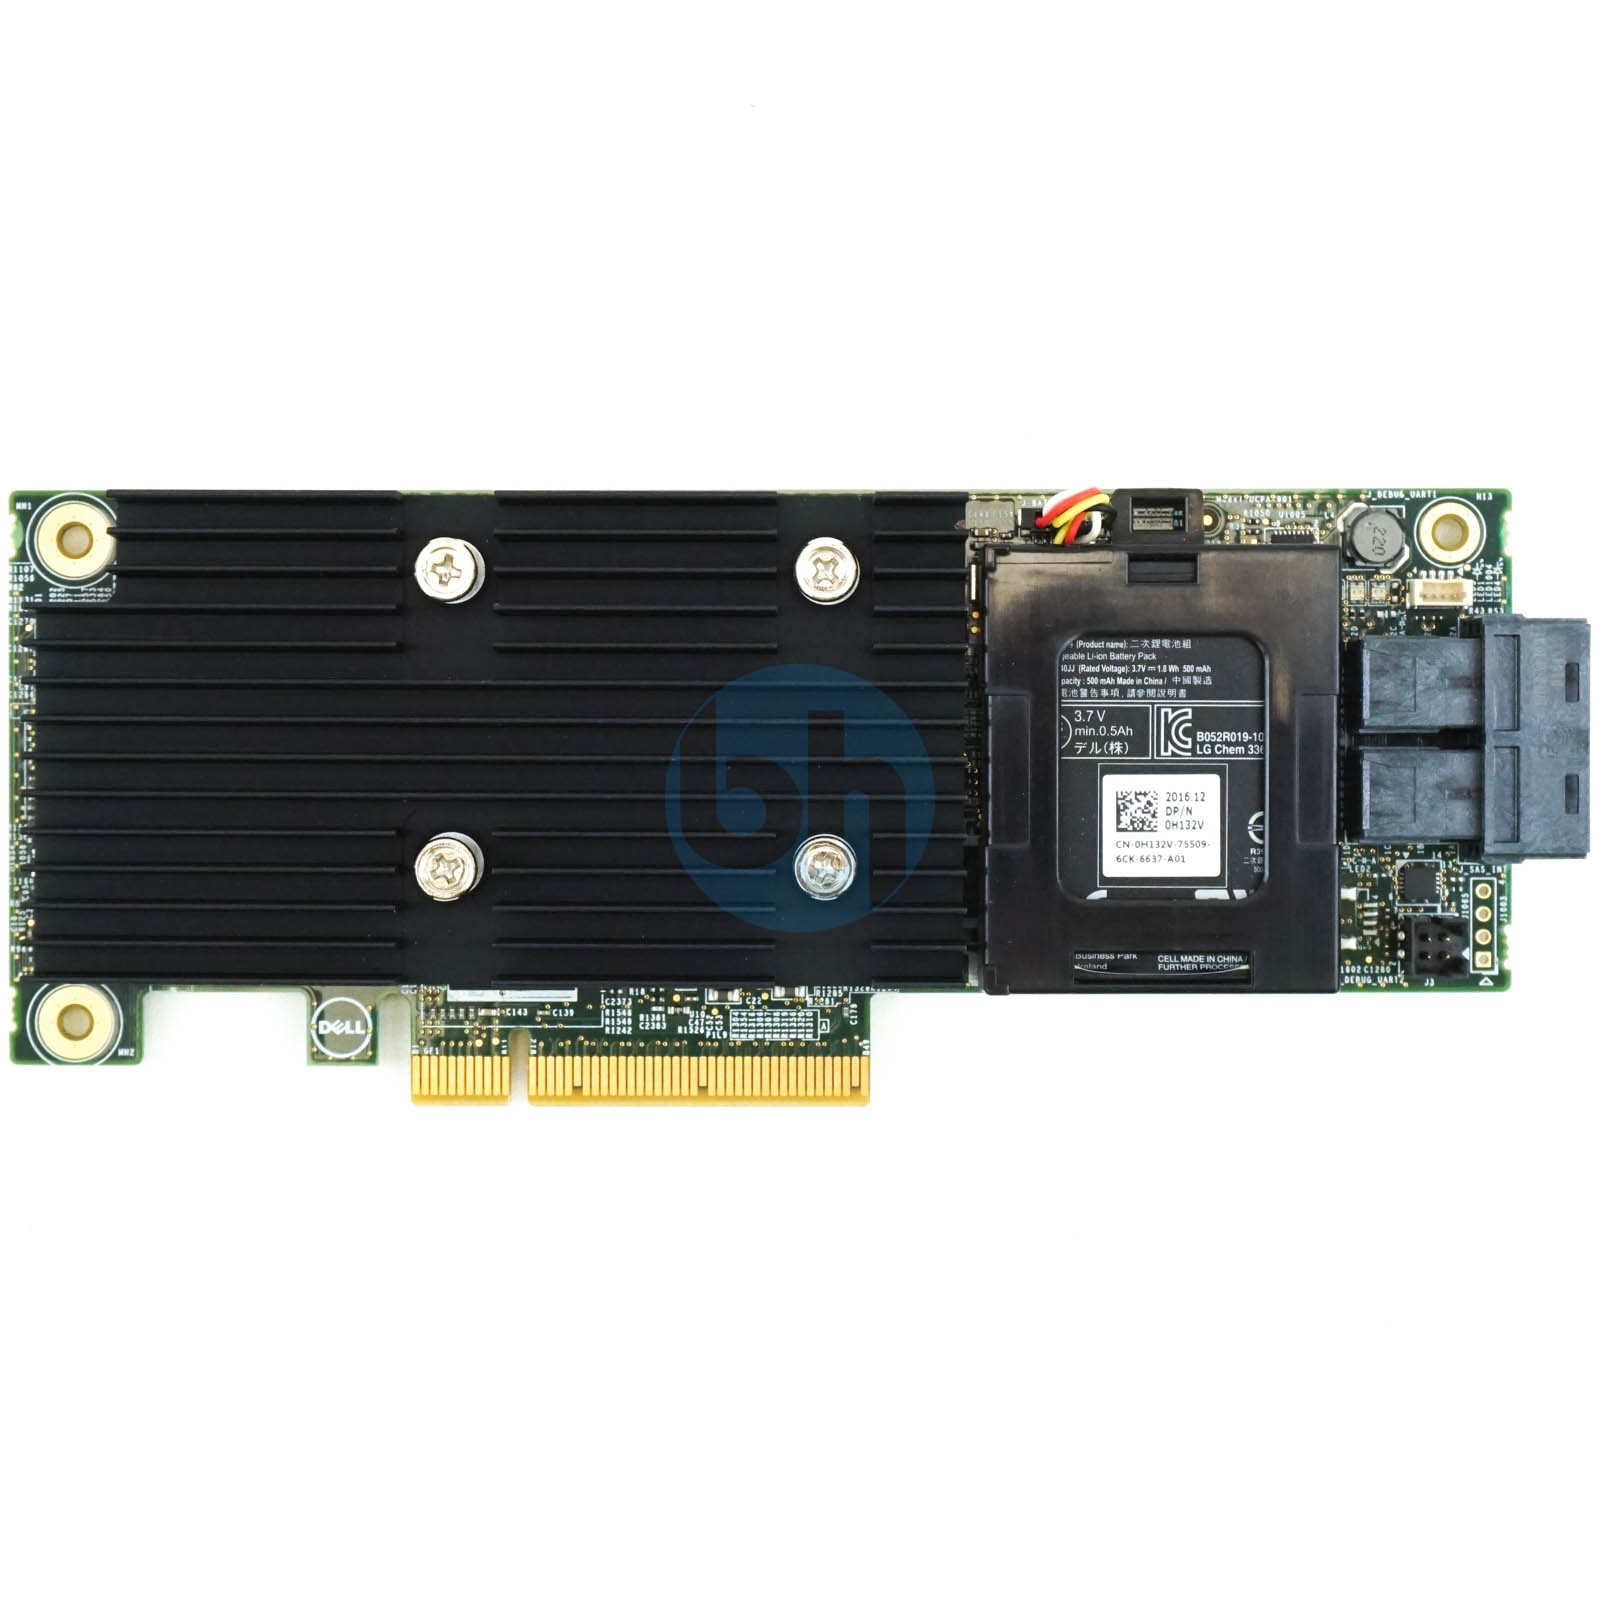 Dell PERC H730 1GB Non-Volatile - PCIe-x8 12Gbps RAID Controller